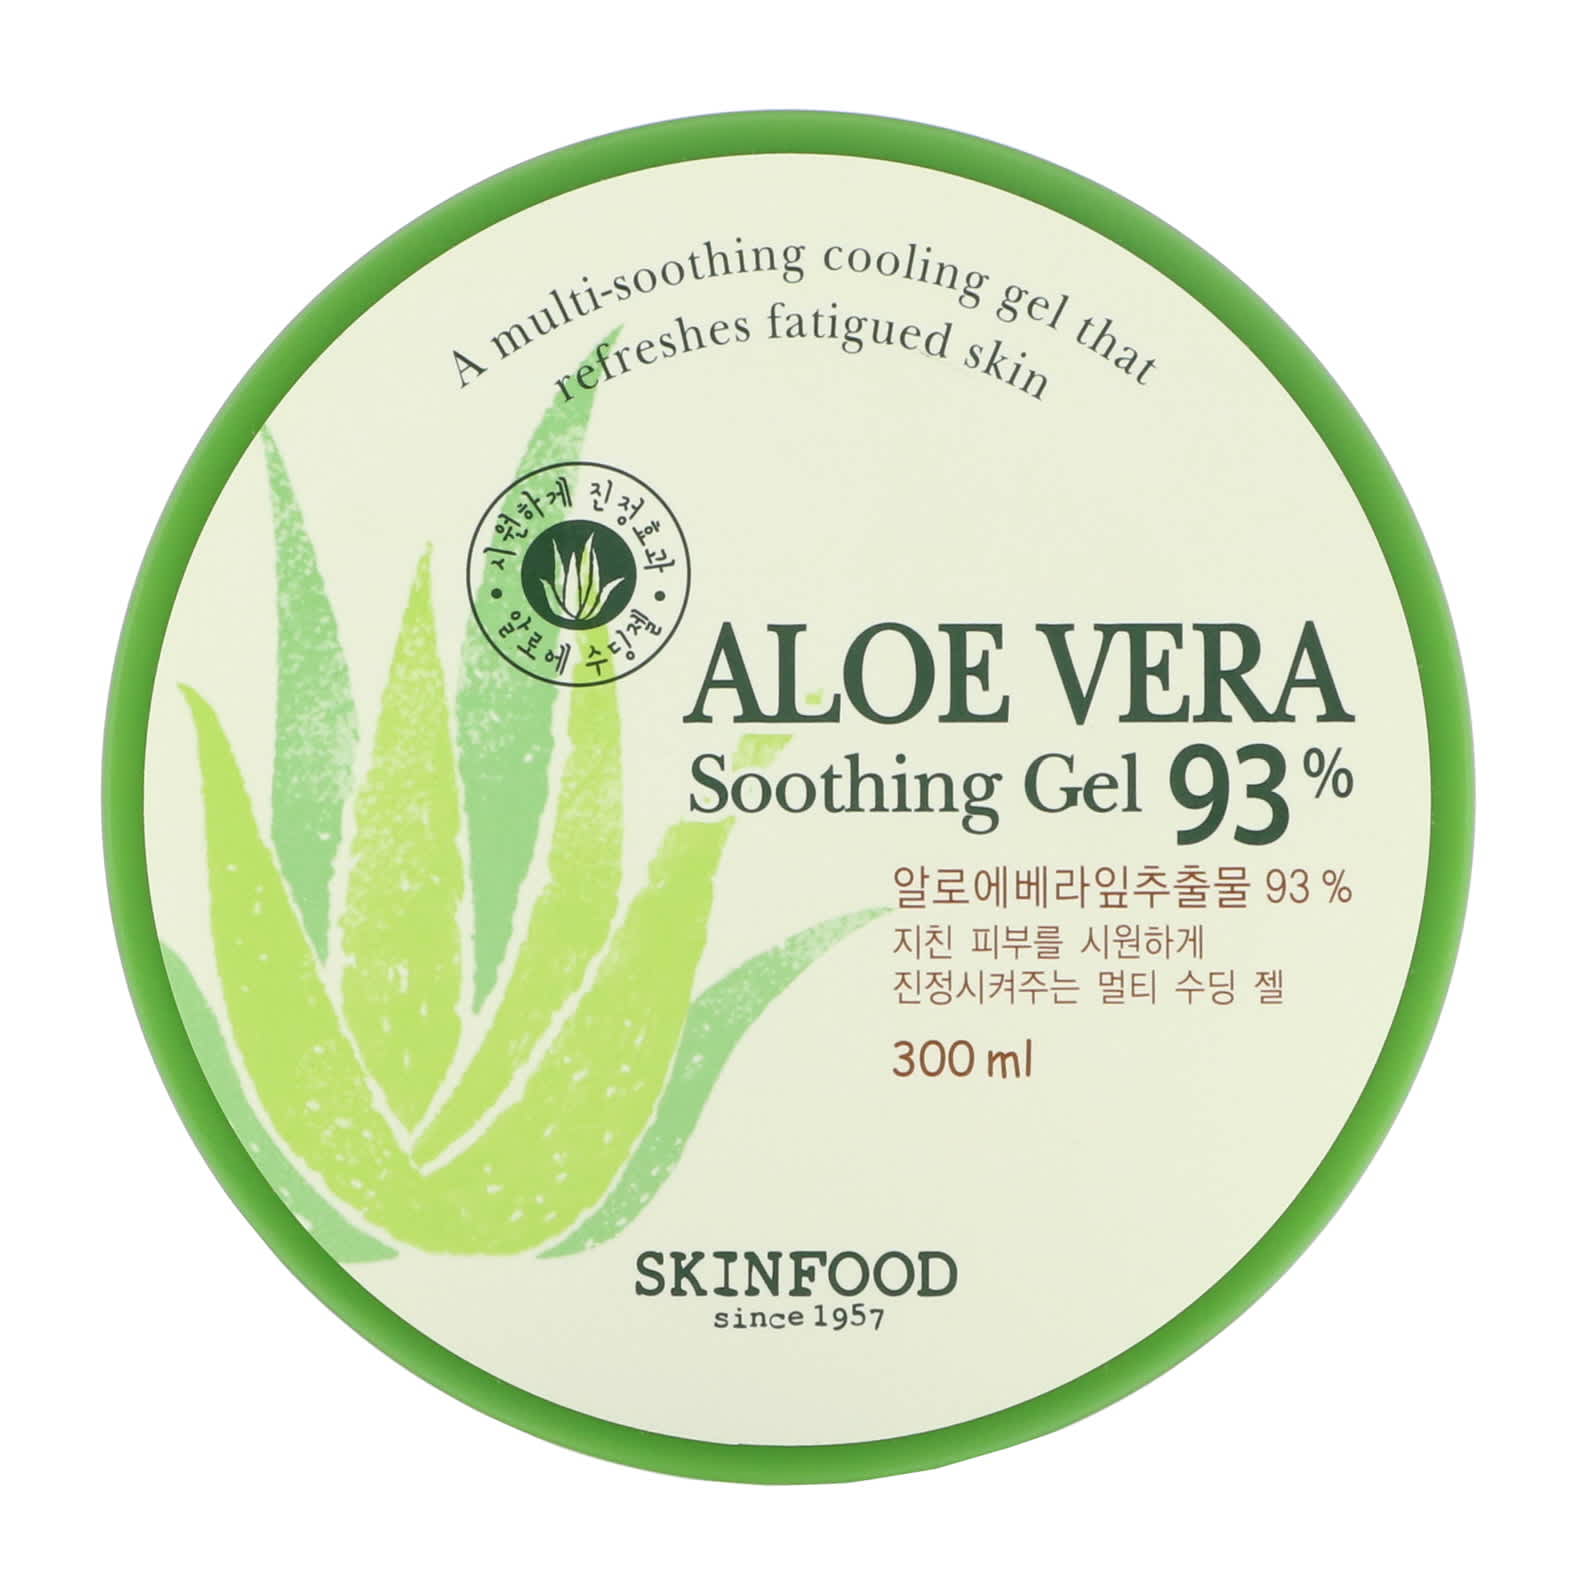 Skinfood, Aloe Vera Soothing Gel 93%